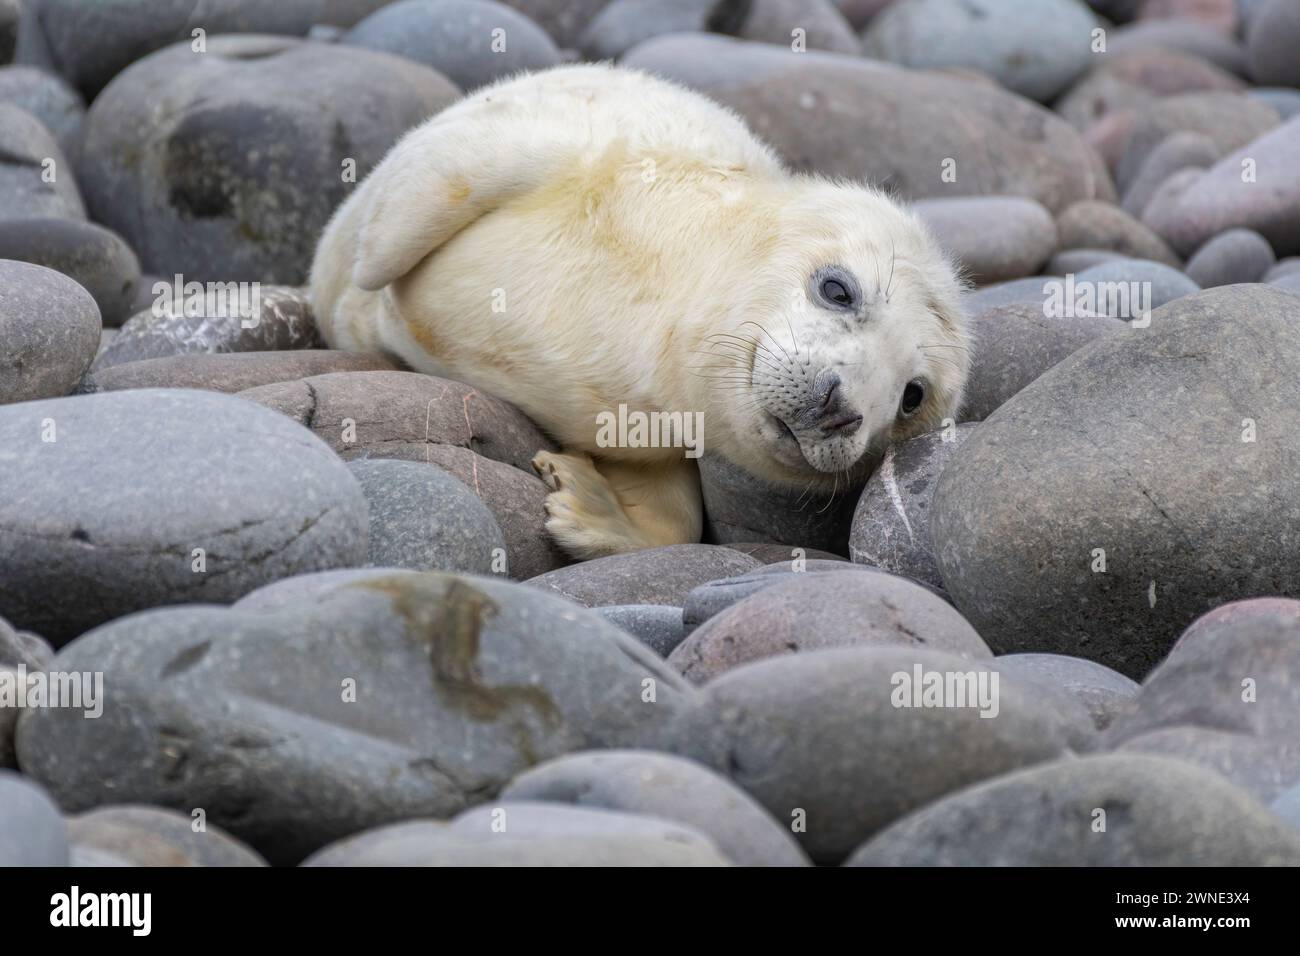 Cuccioli di foca grigia appena nati in attesa del ritorno della madre per dargli da mangiare. Trovato su una spiaggia a Berwickshire, Scozia, Regno Unito Foto Stock